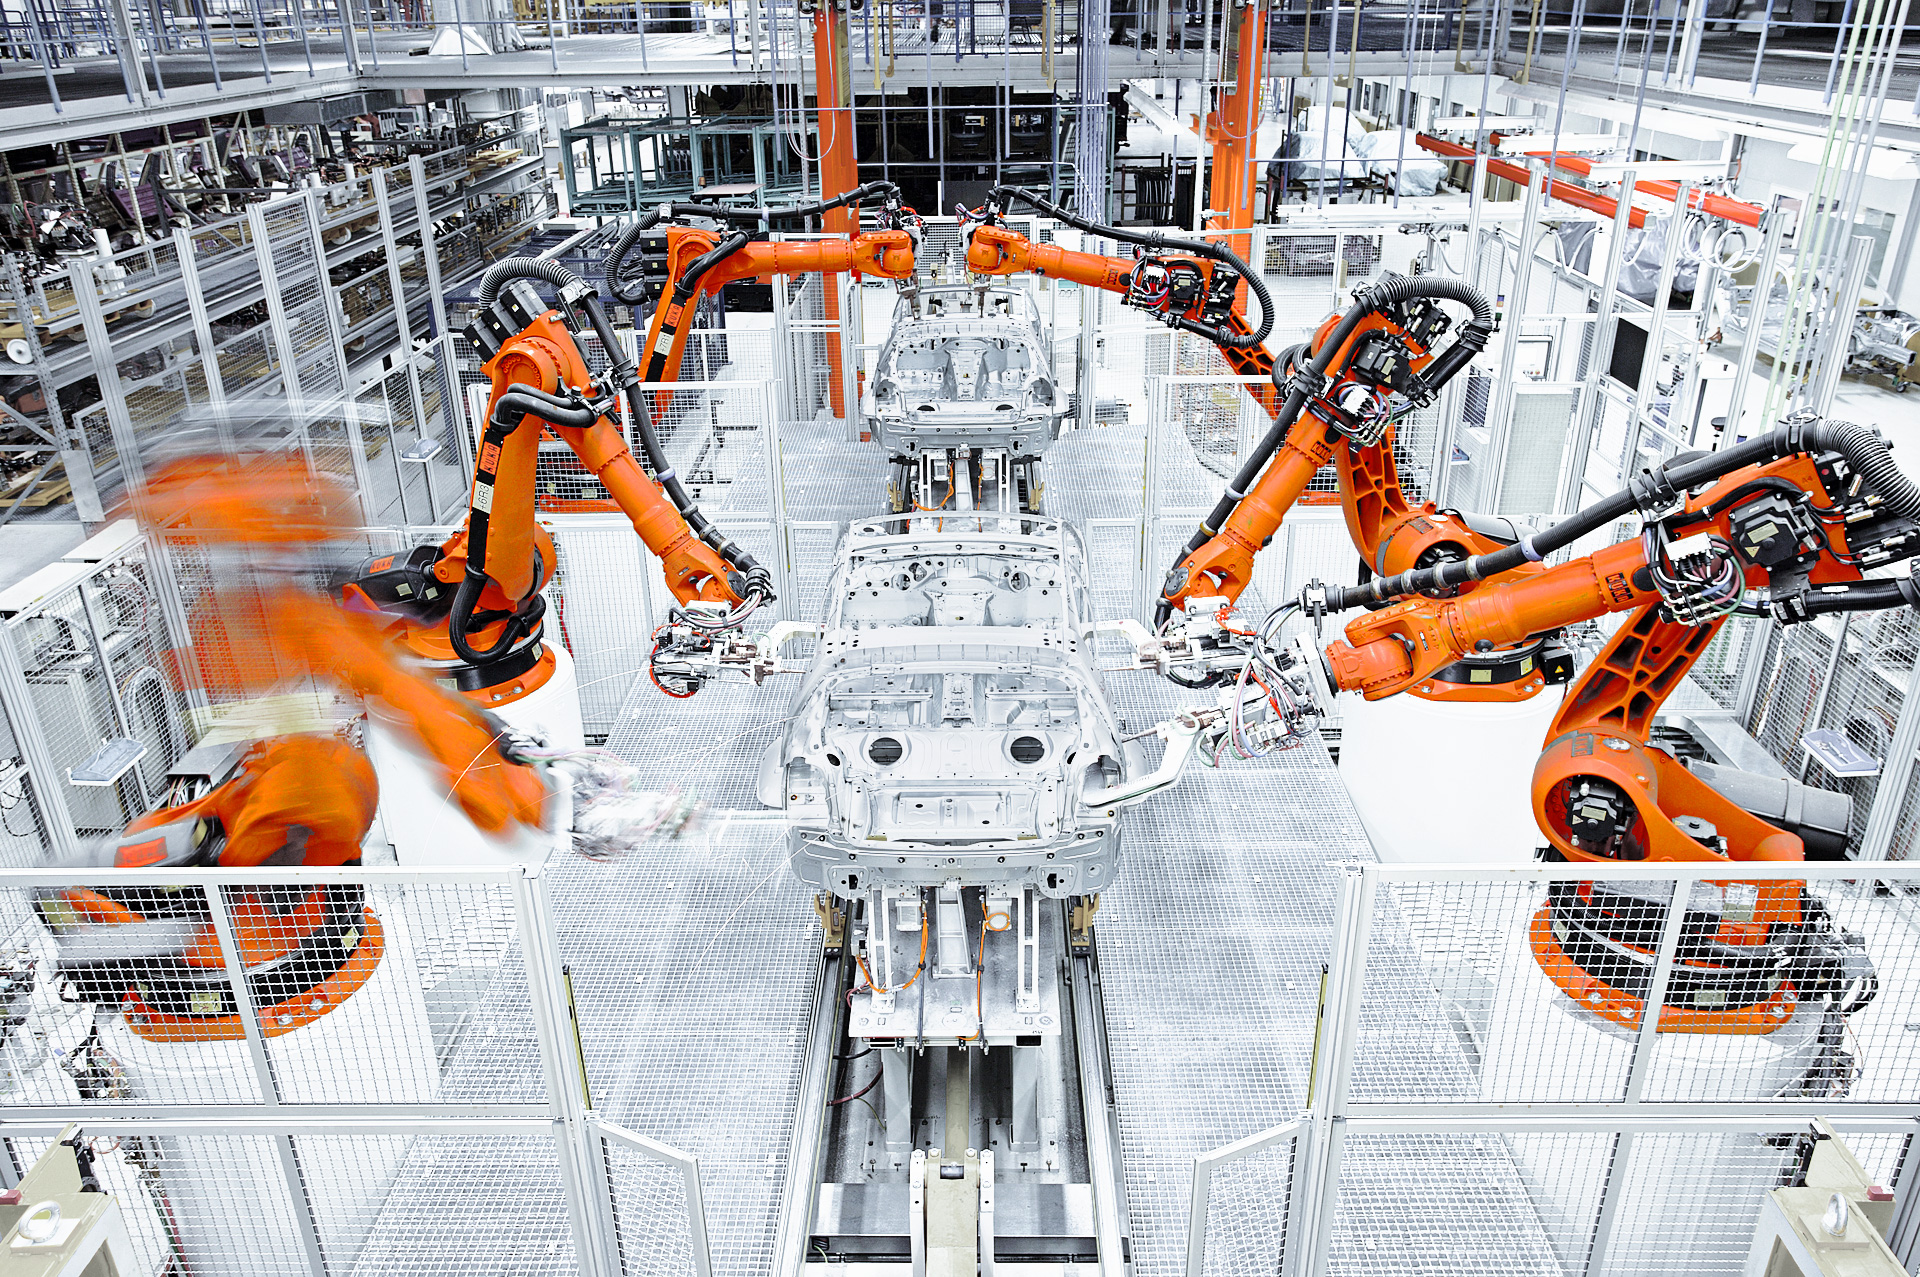 Ipar 4.0 megoldás KUKA Robotics robotokkal autógyárban